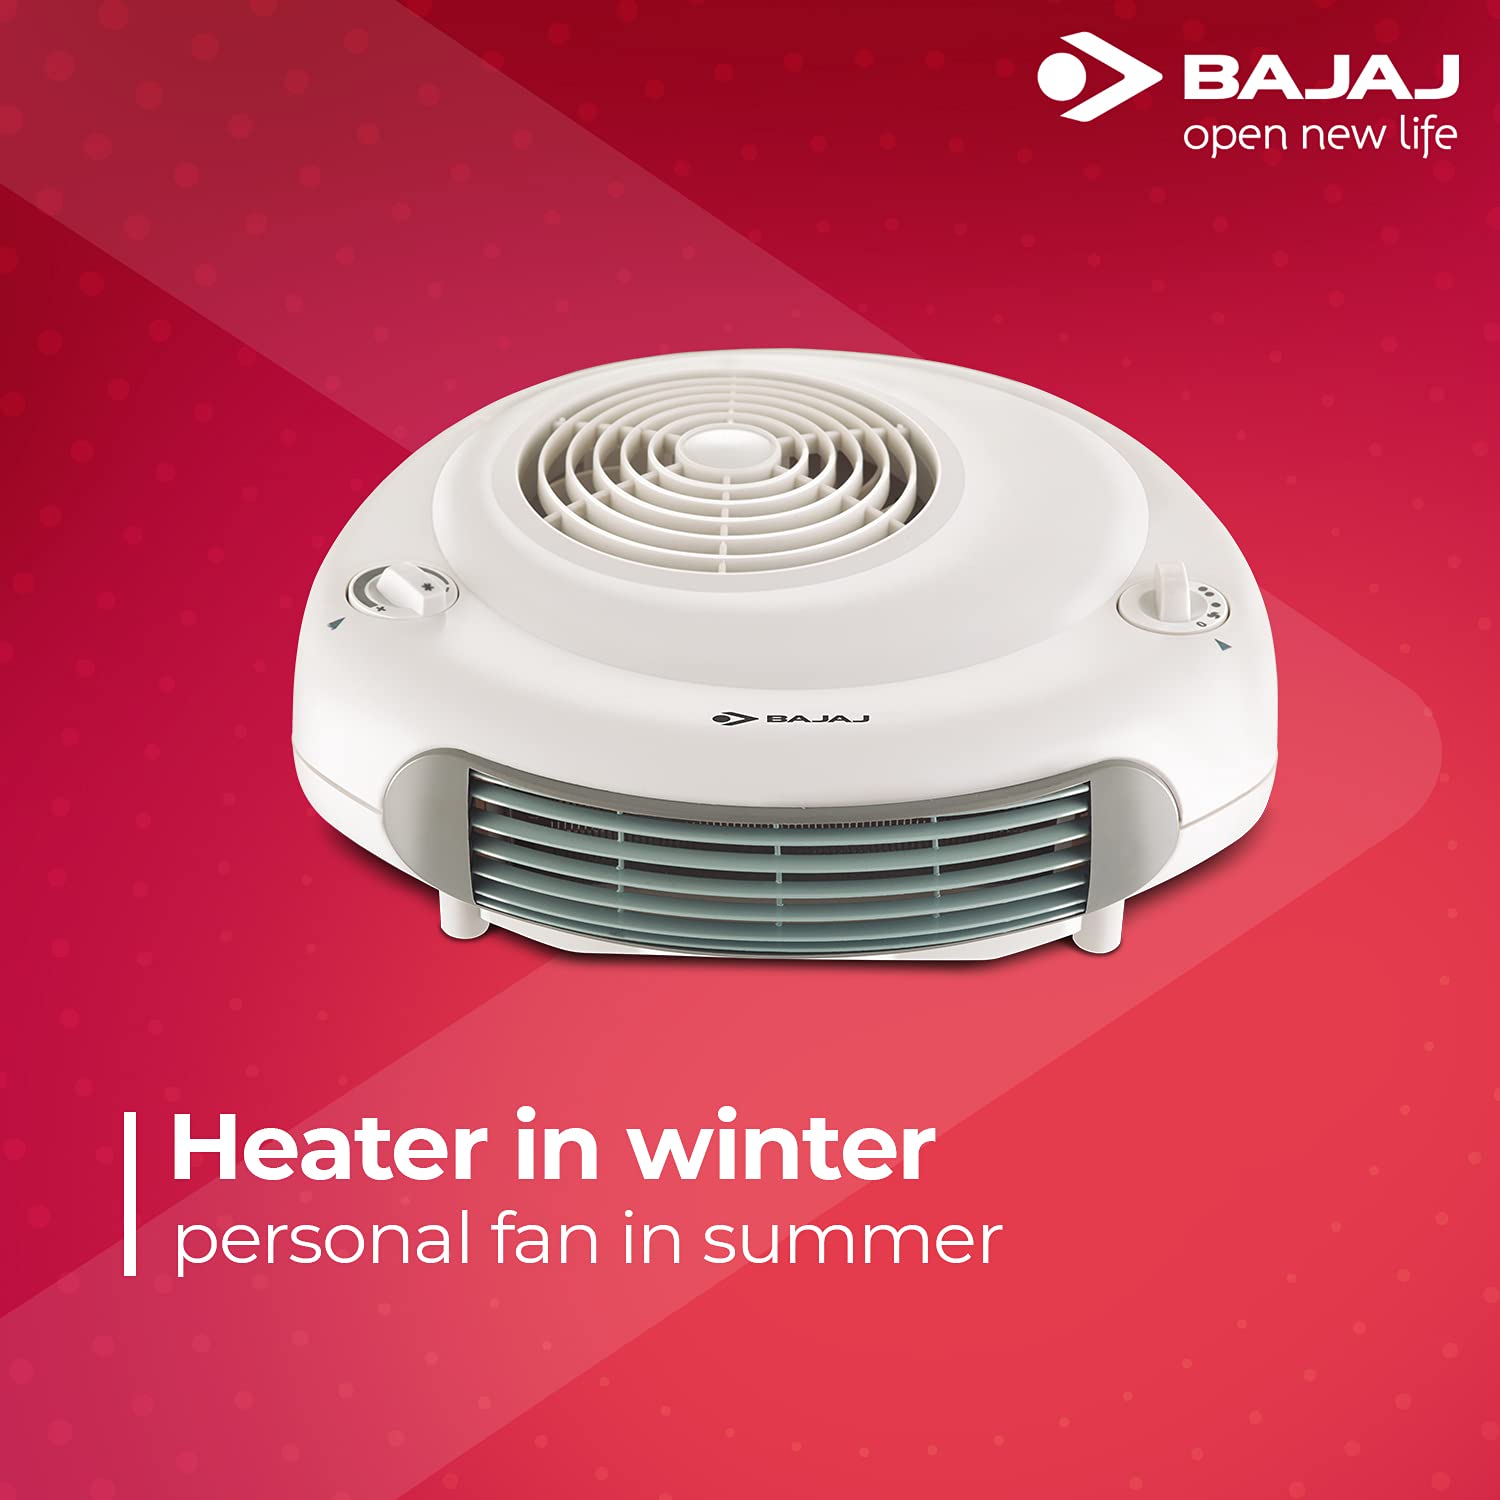 Amazon Deal:  सर्दियों में हीटिंग और गर्मियों में फैन की तरह काम करता है ये Bajaj Room Heater, ऑफर में 32% डिस्काउंट पर खरीदें